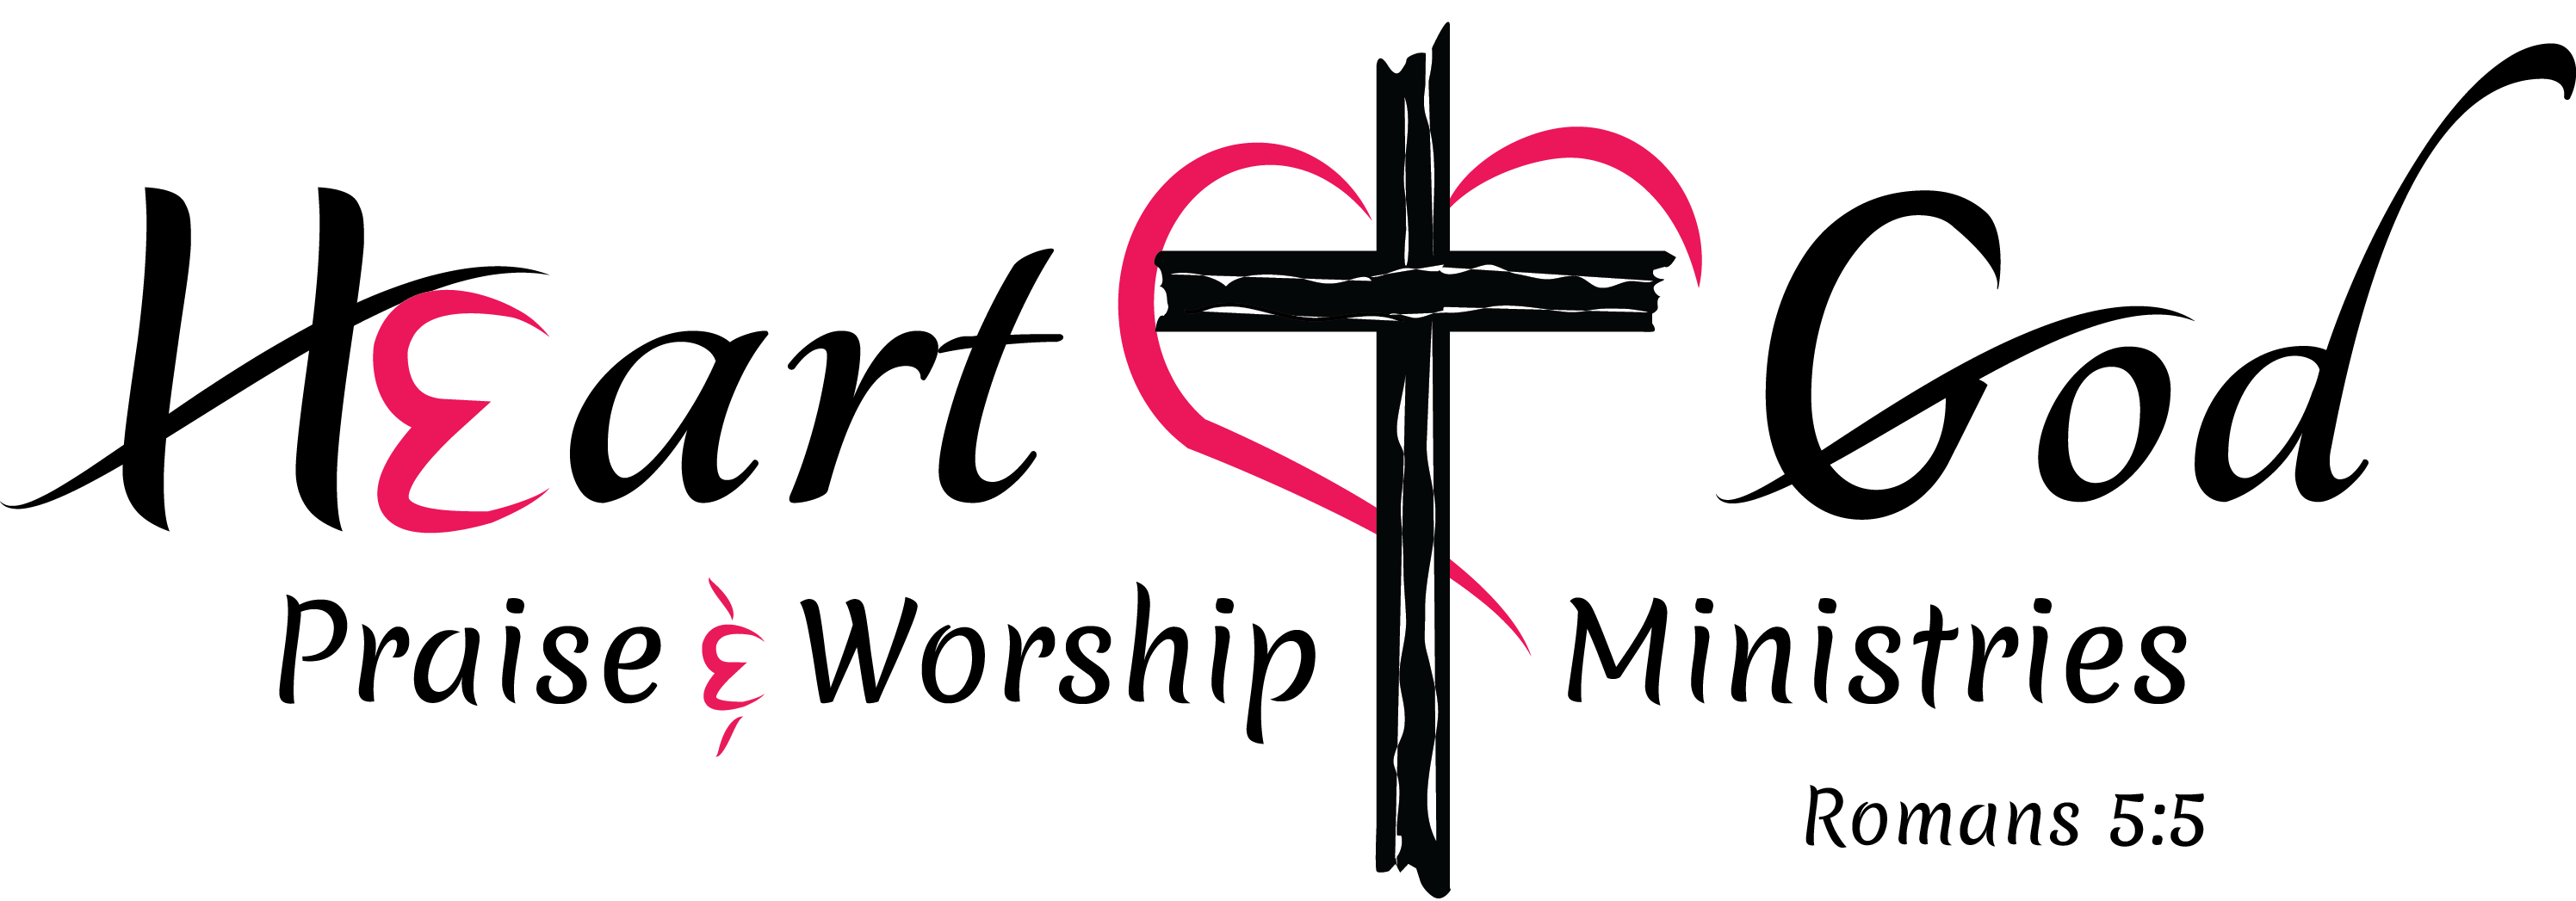 Logo Of Heart of God